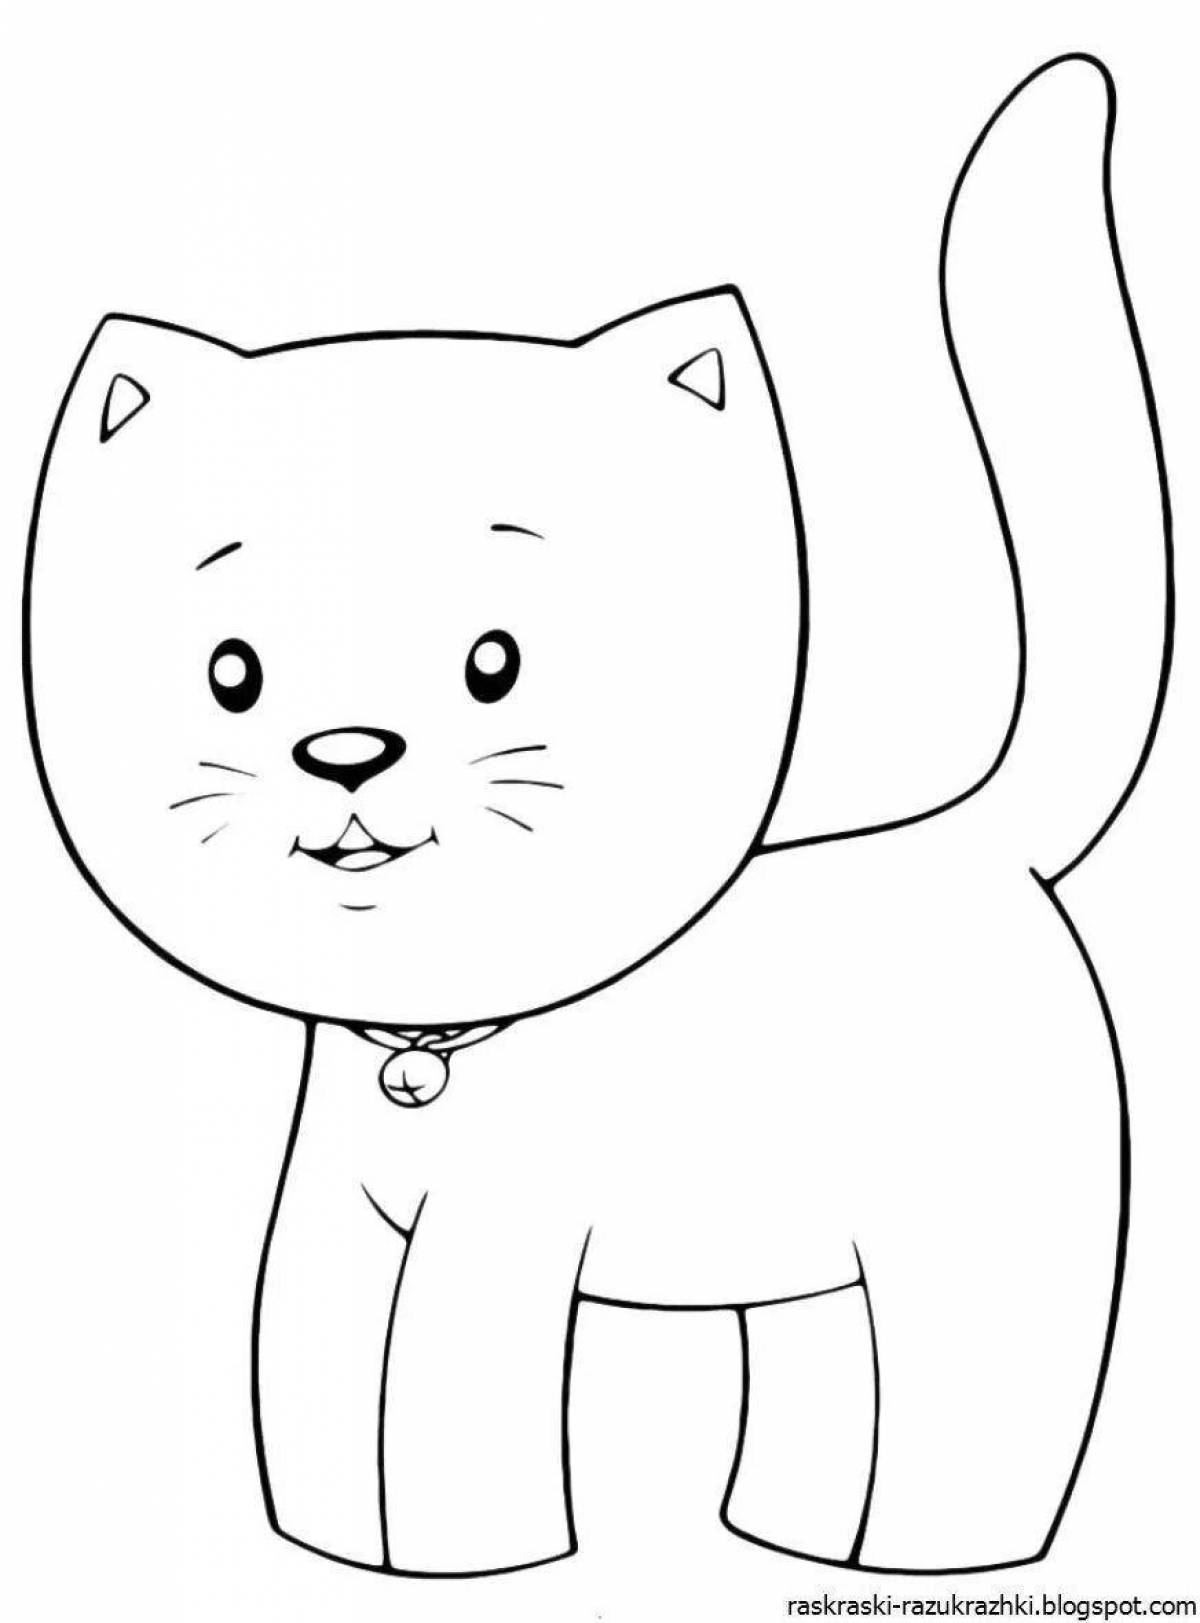 Раскраска дерзкая кошка для детей